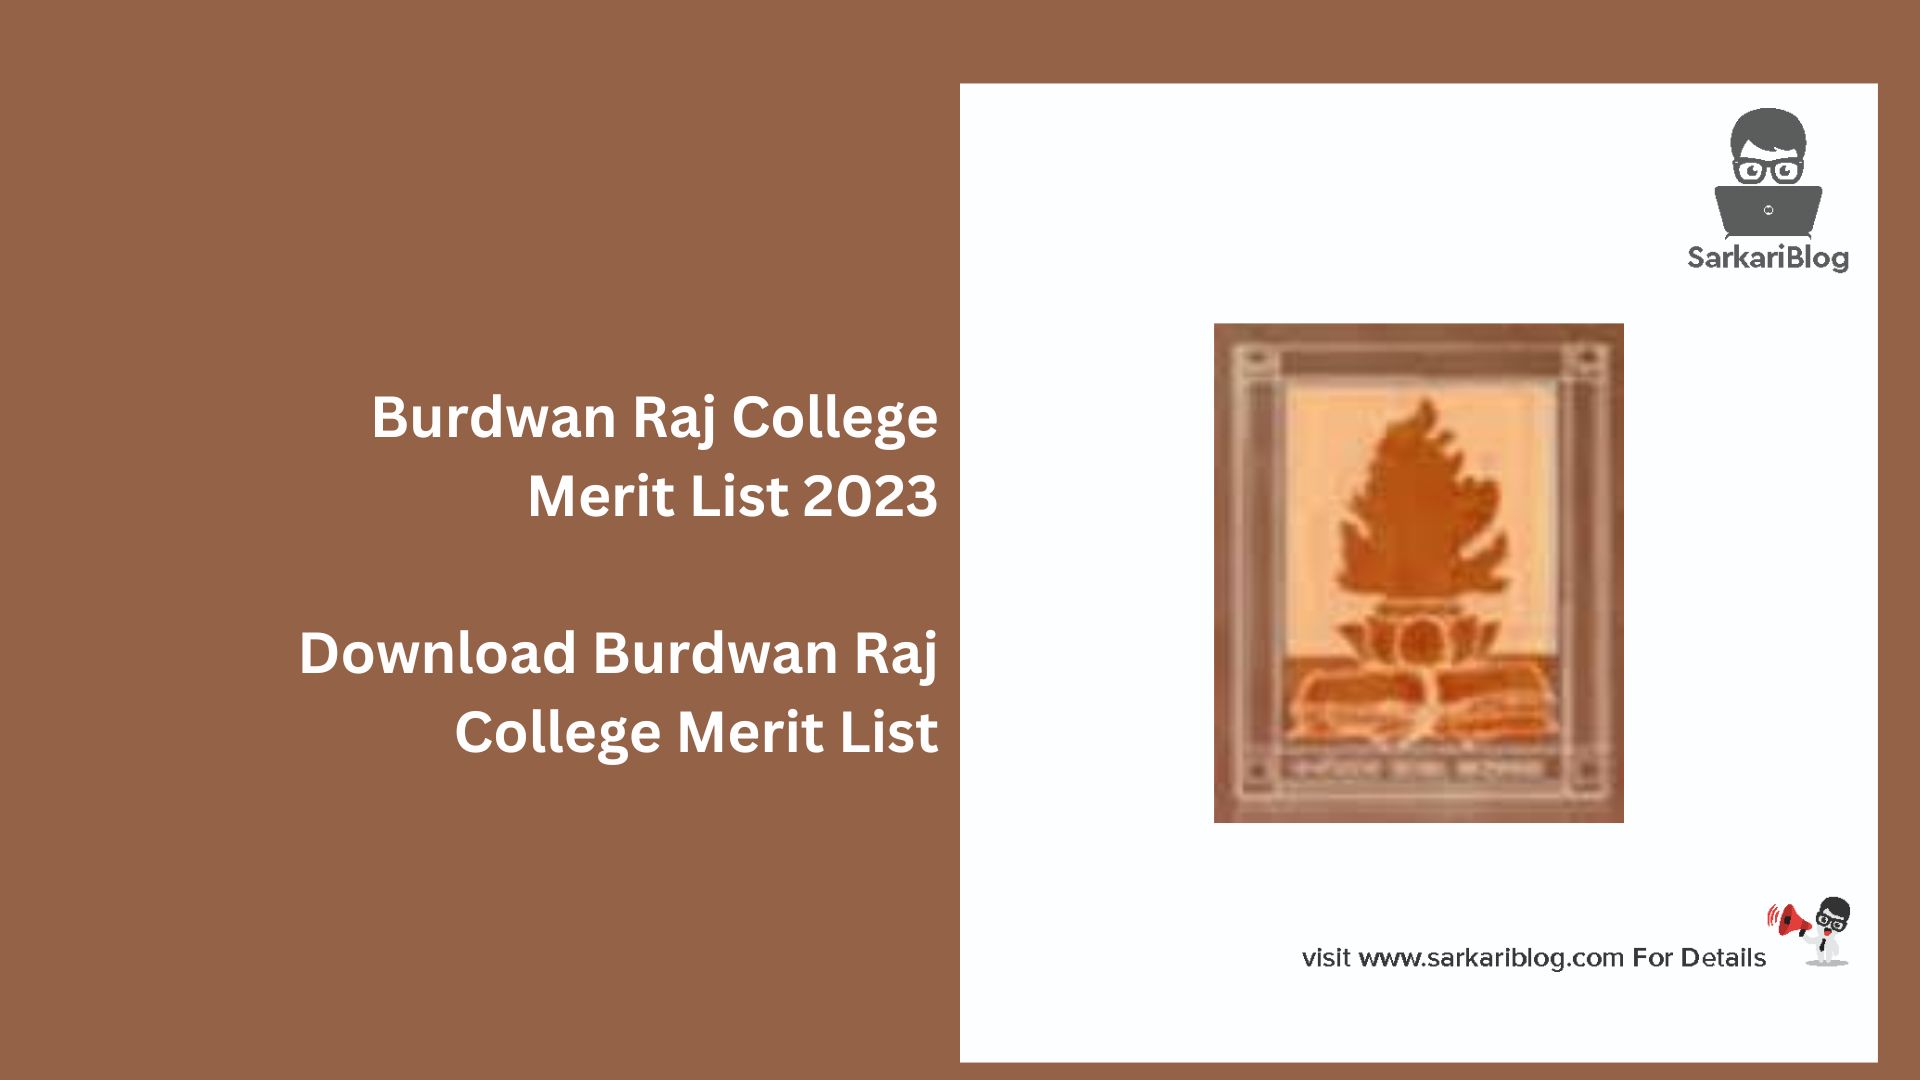 Burdwan Raj College Merit List 2023